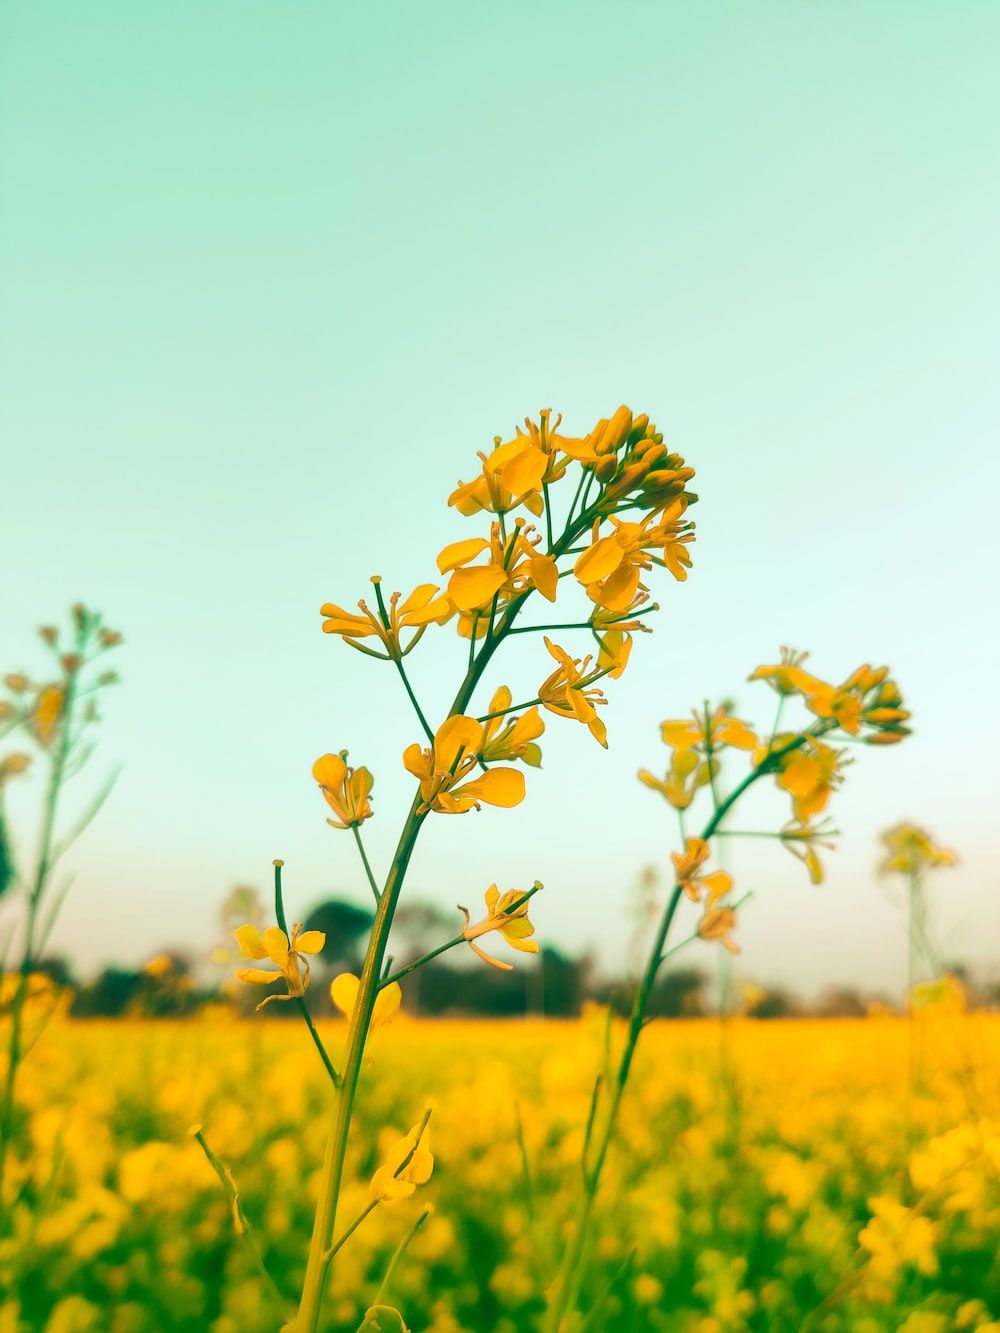  Landwirtschaft Hintergrundbild 1000x1333. Foto zum Thema Ein großes feld mit sonnenblumen in der mitte eines feldes